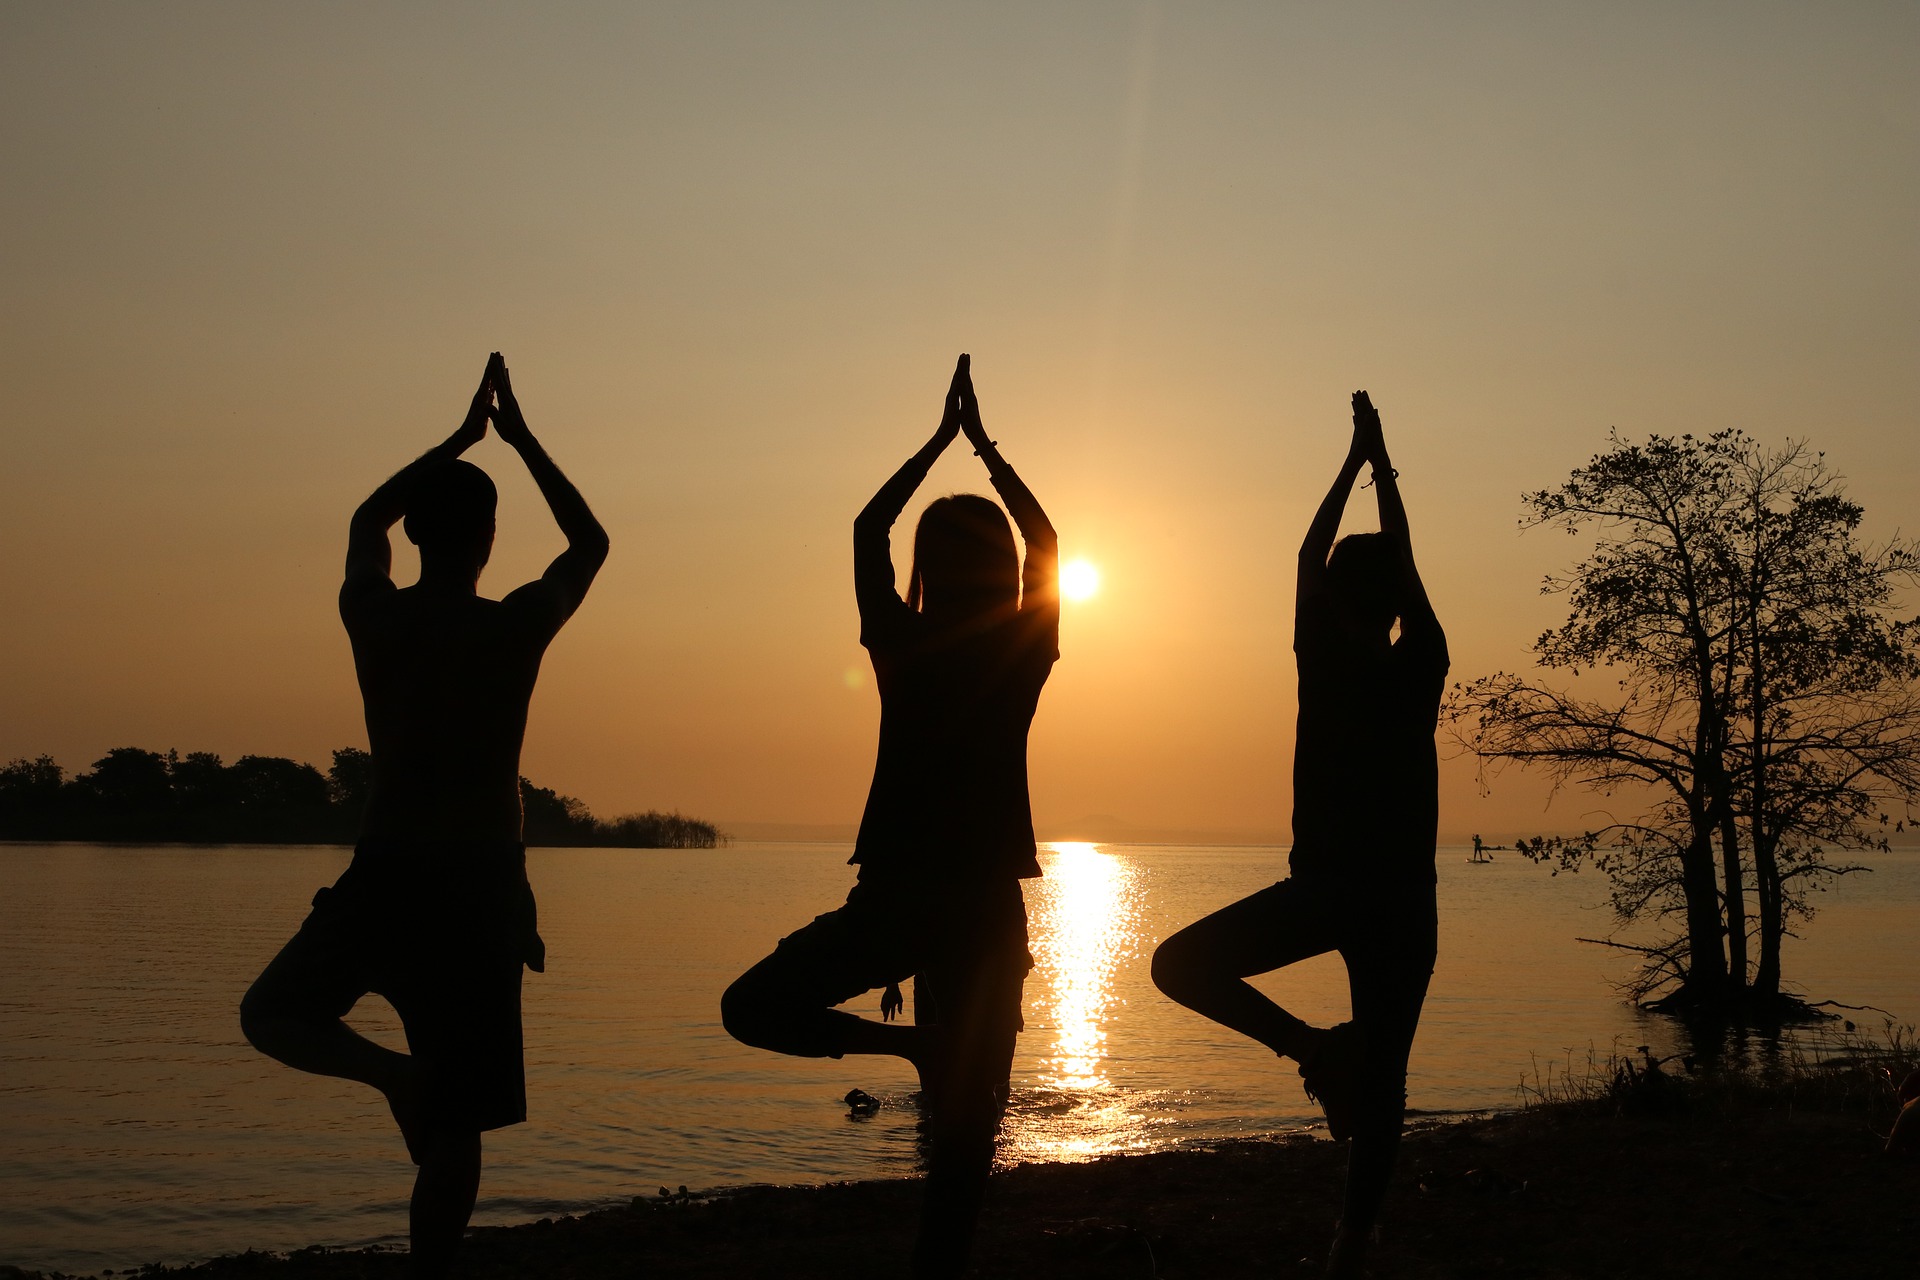 yoga tour india